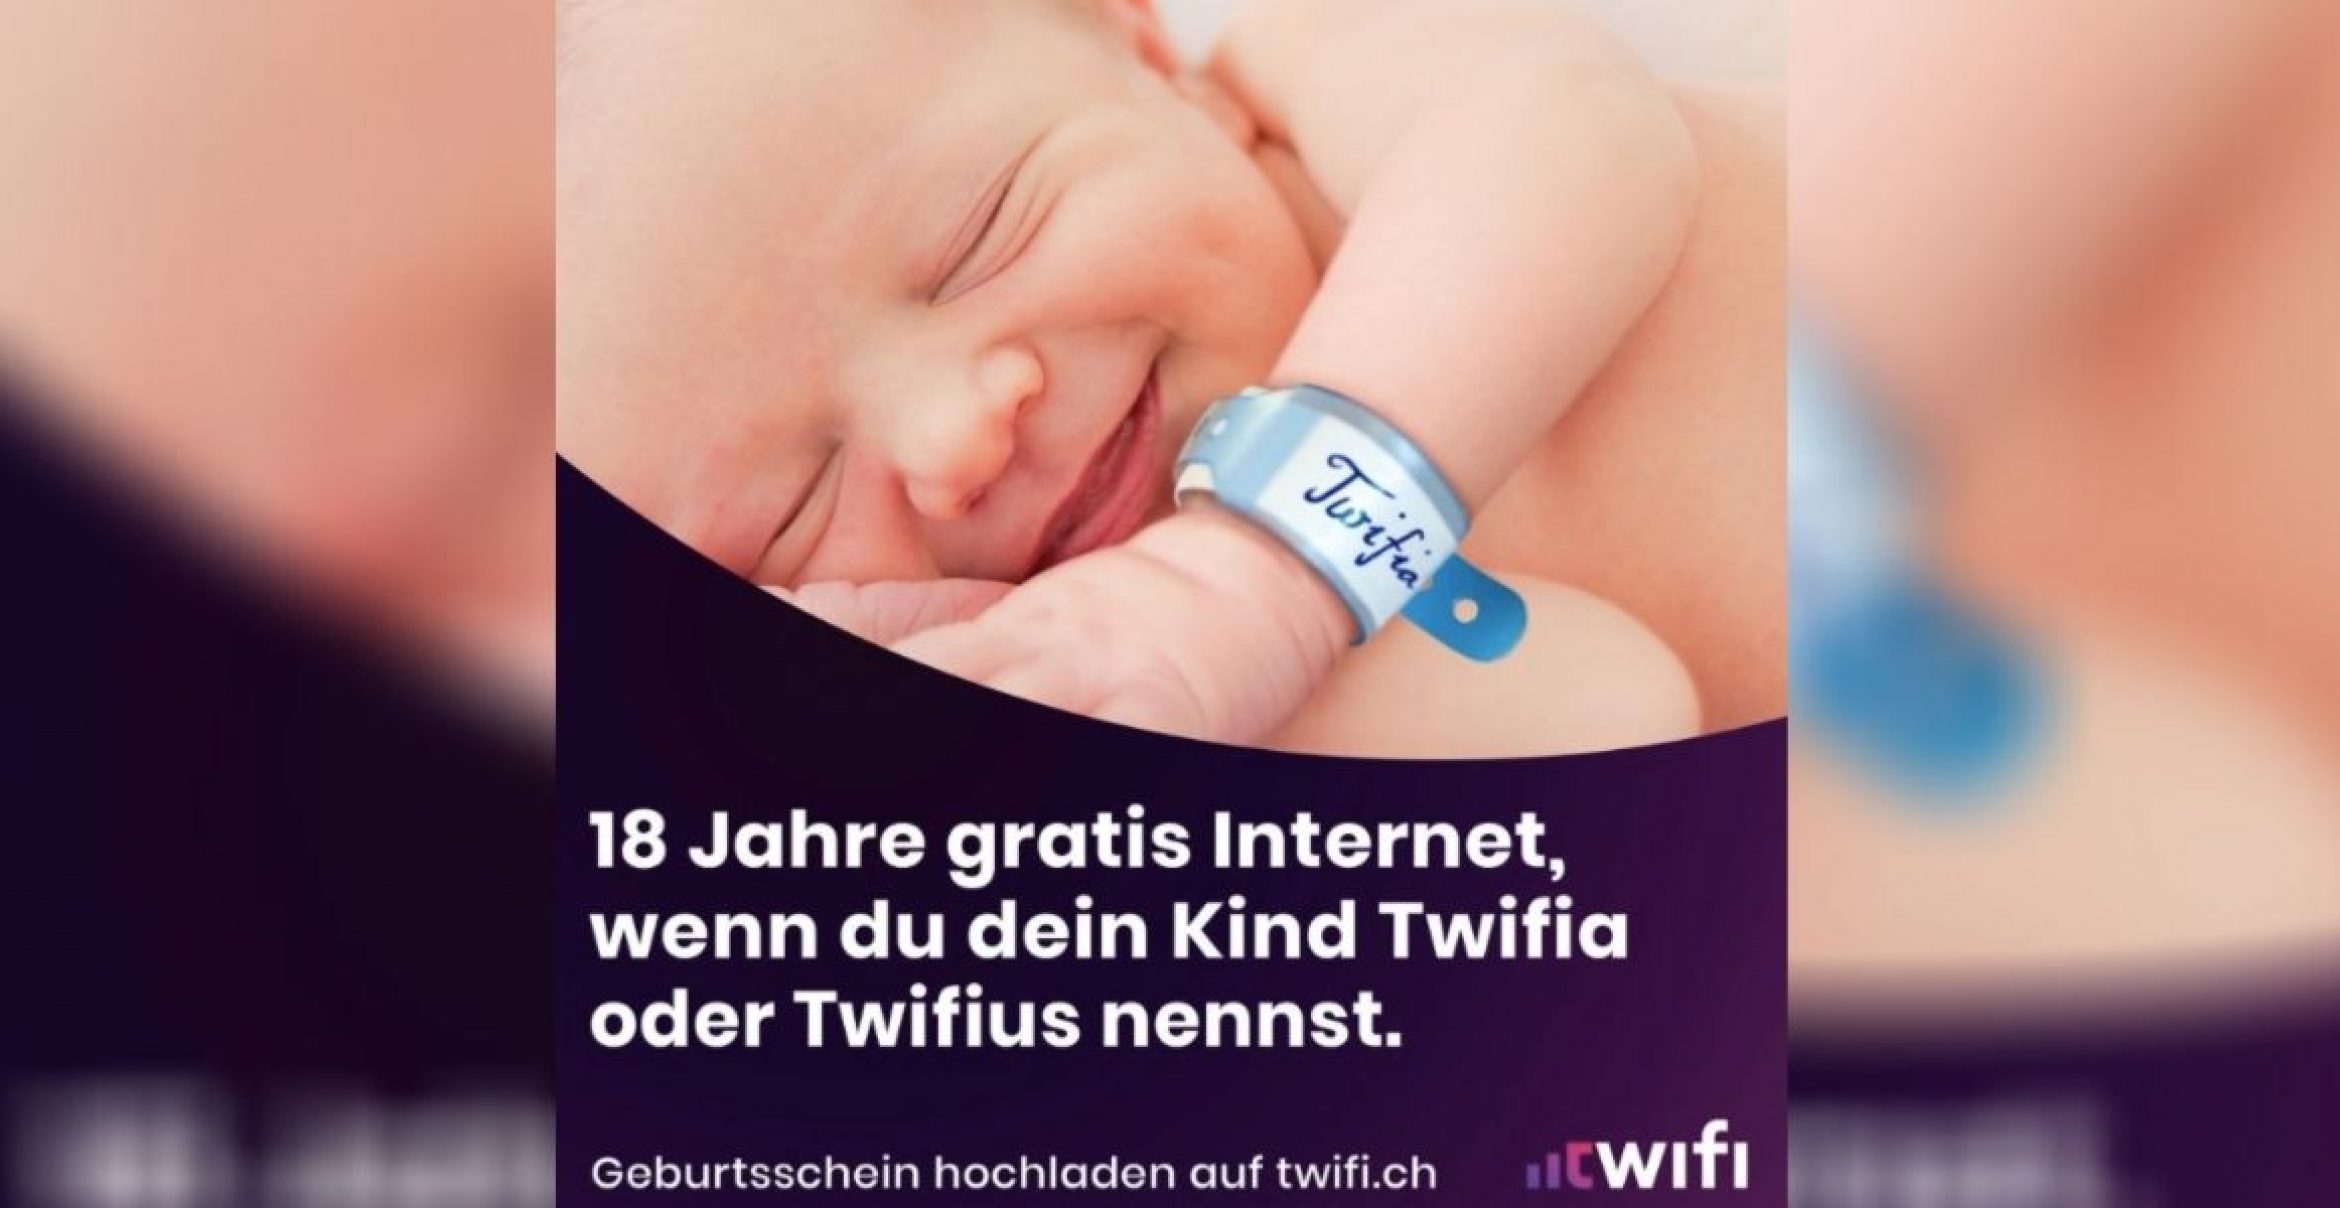 Maximale Kundenbindung: Wer sein Kind nach diesem Internetanbieter benennt, erhält 18 Jahre Internet for free